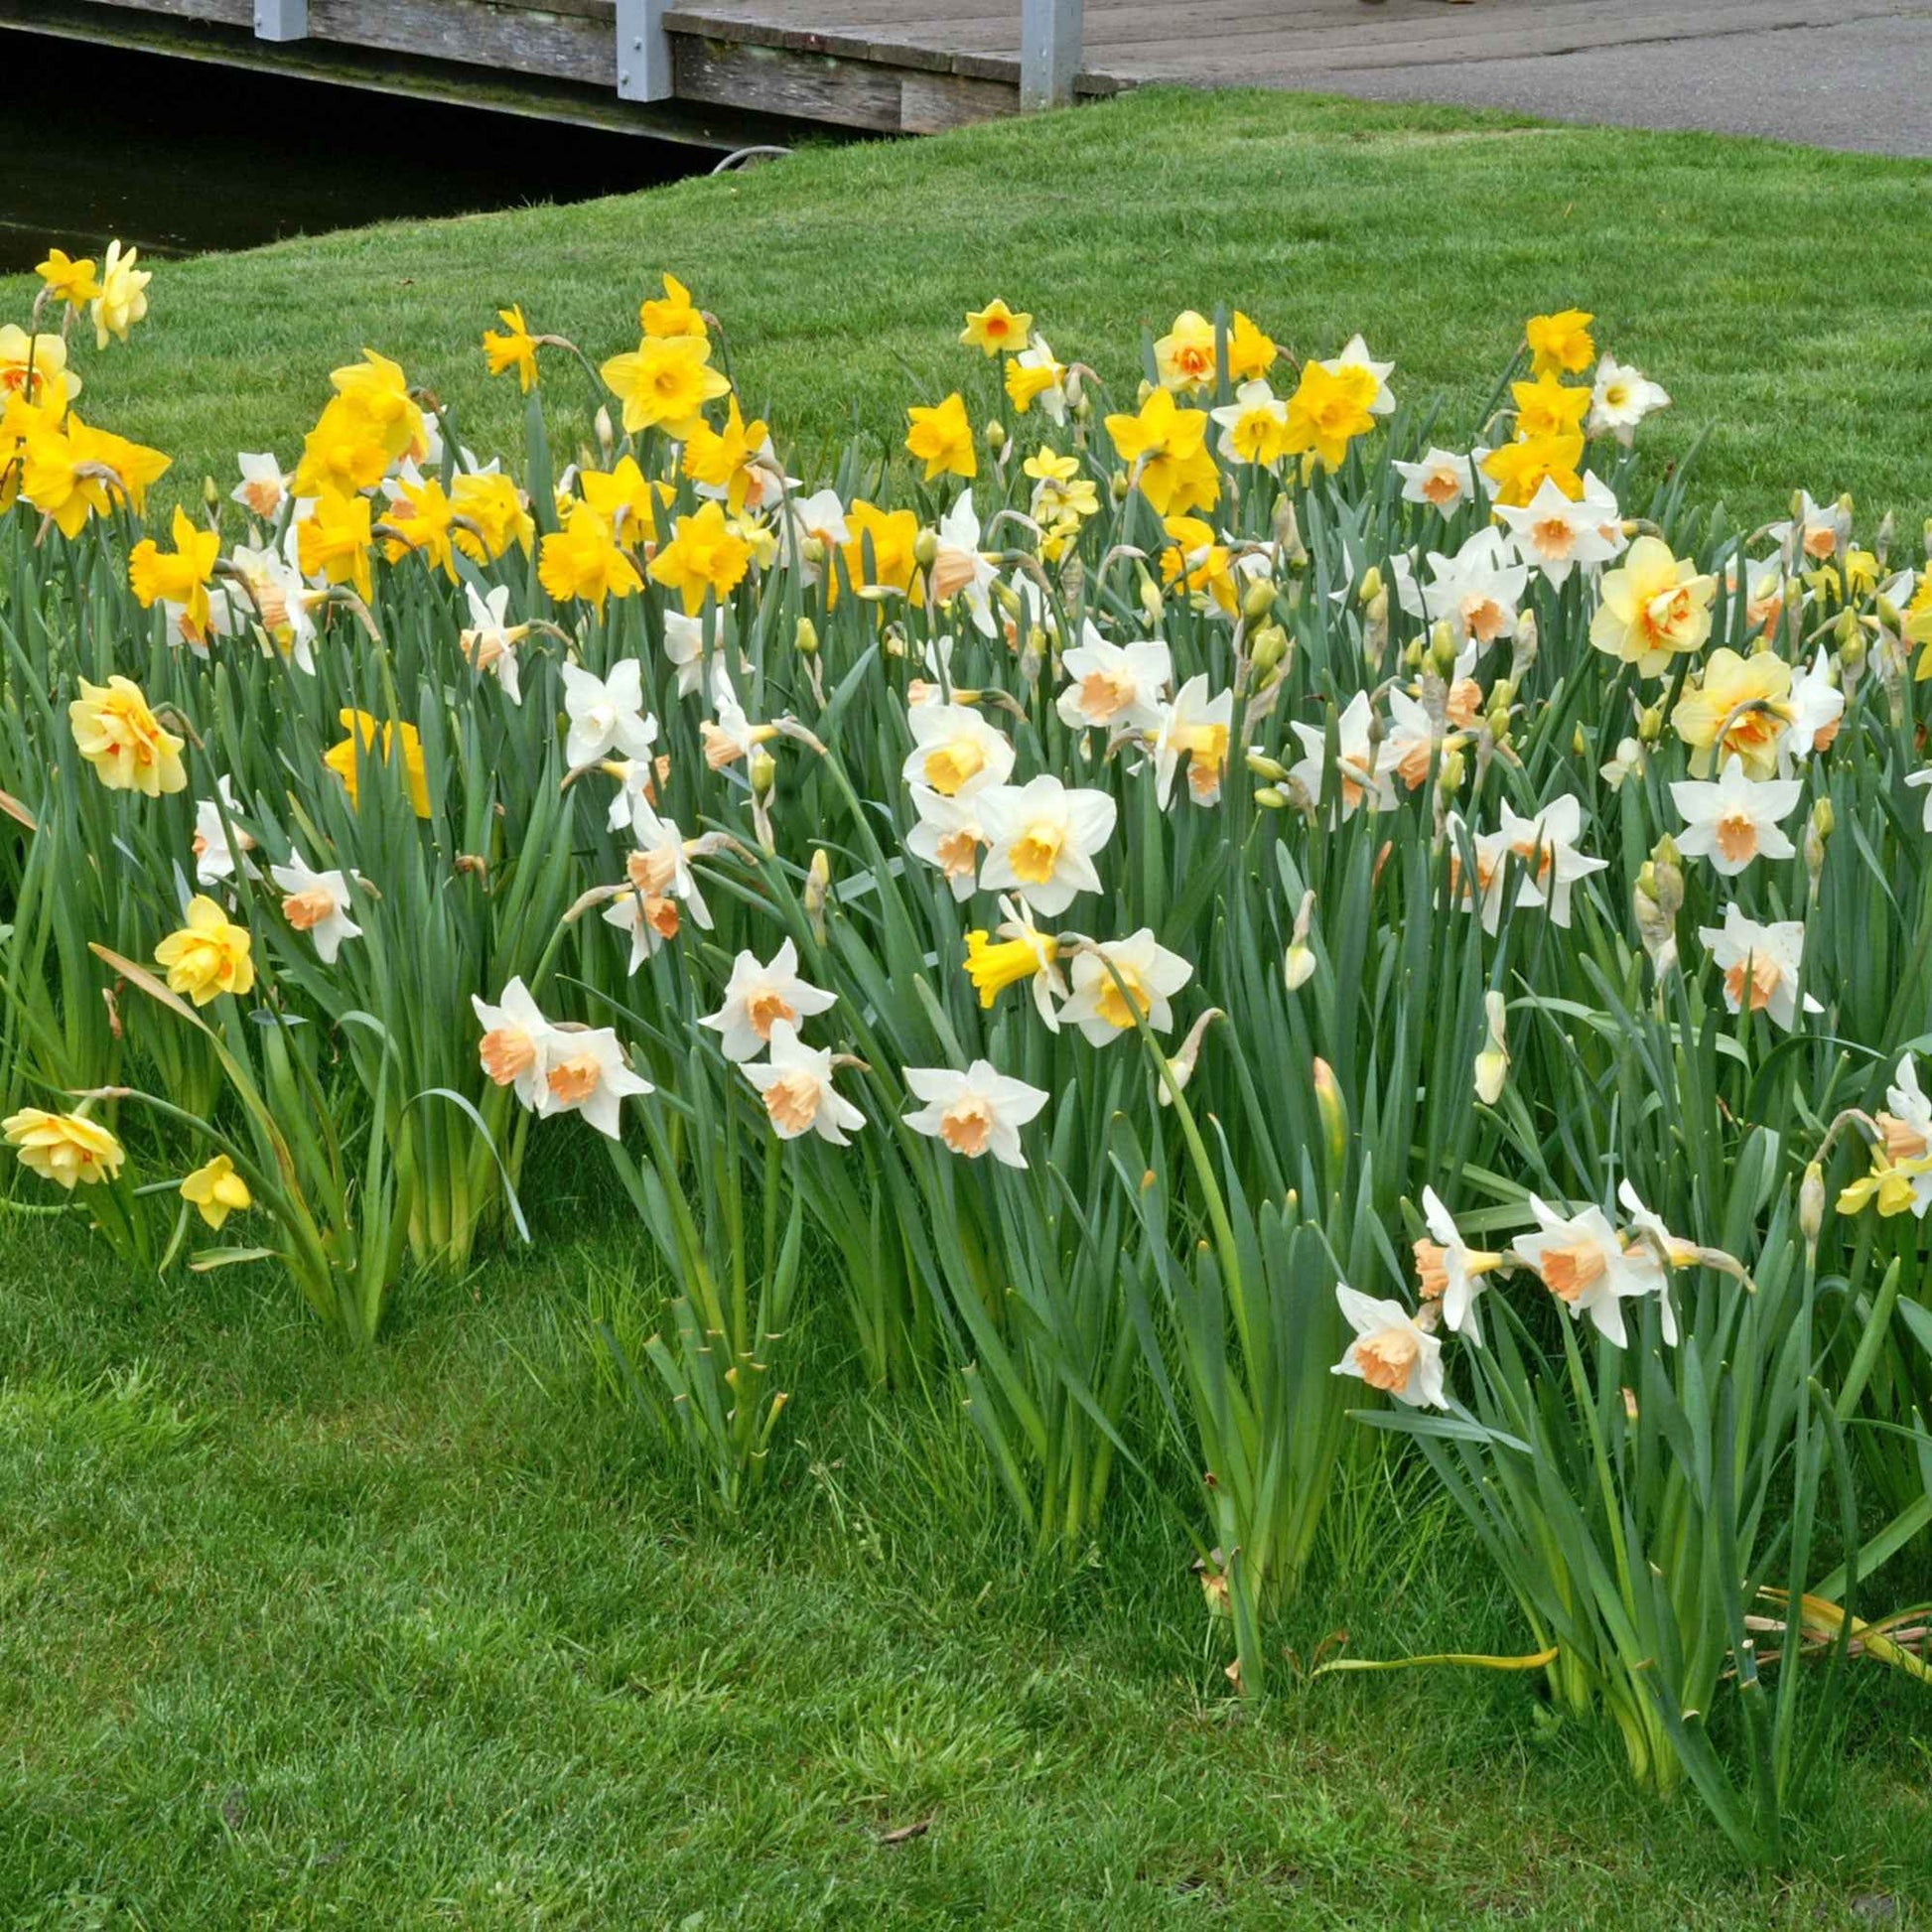 25x Narcisse Narcissus - Mélange 'Dwarf' biologique jaune-blanc - Bulbes de fleurs populaires